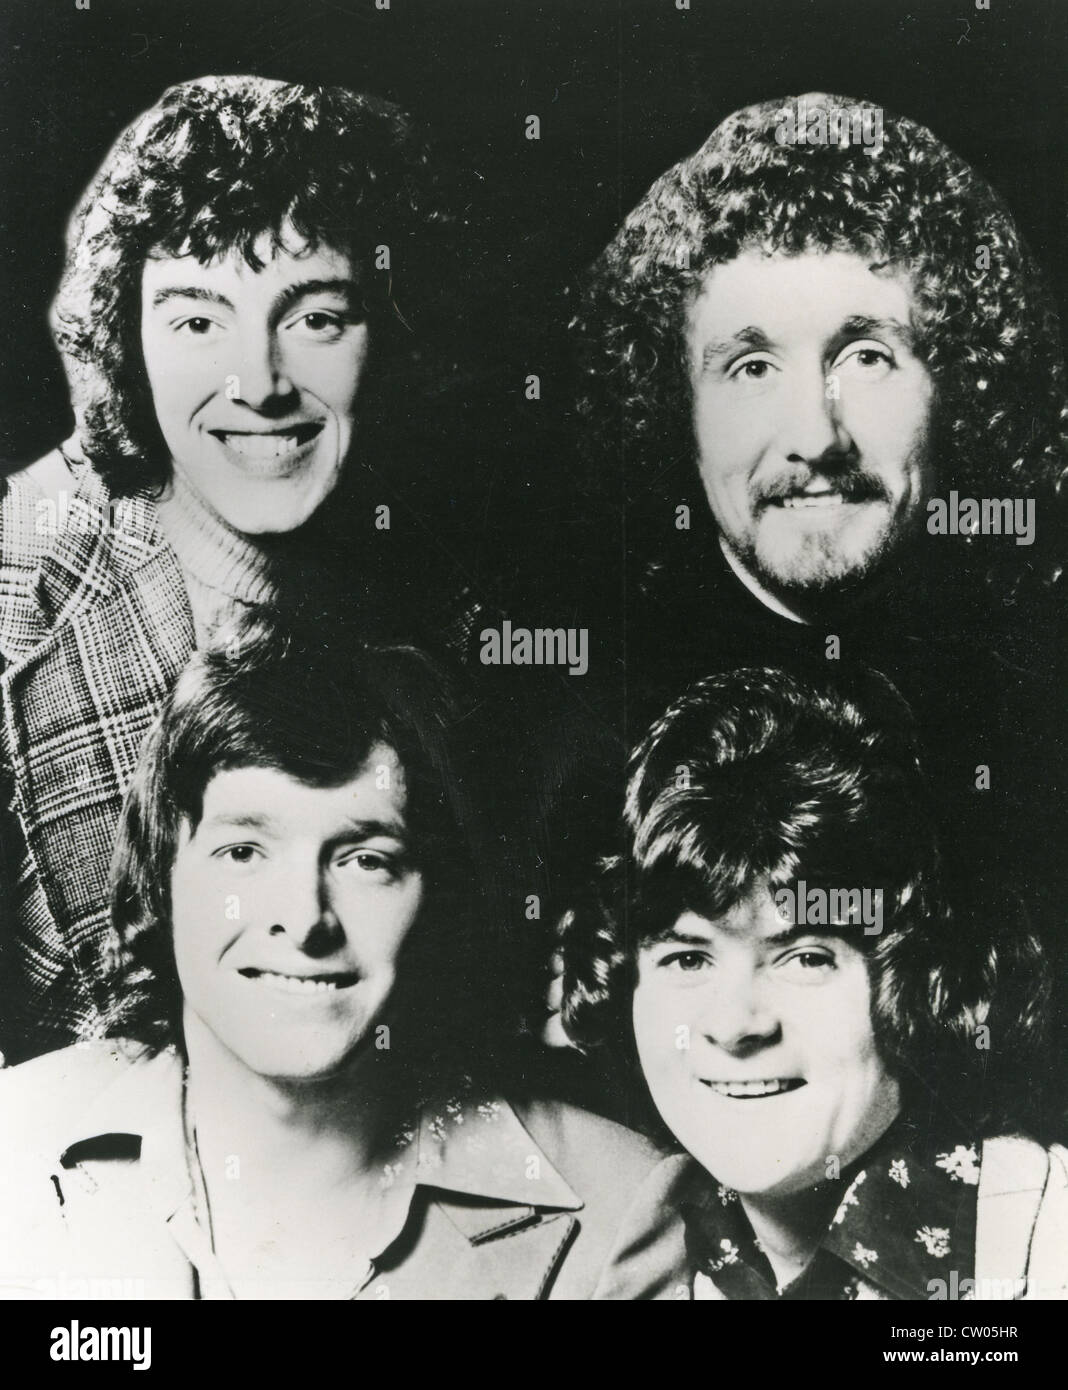 Dentelle de papier photo de promotion de groupe pop britannique de 1972 Banque D'Images